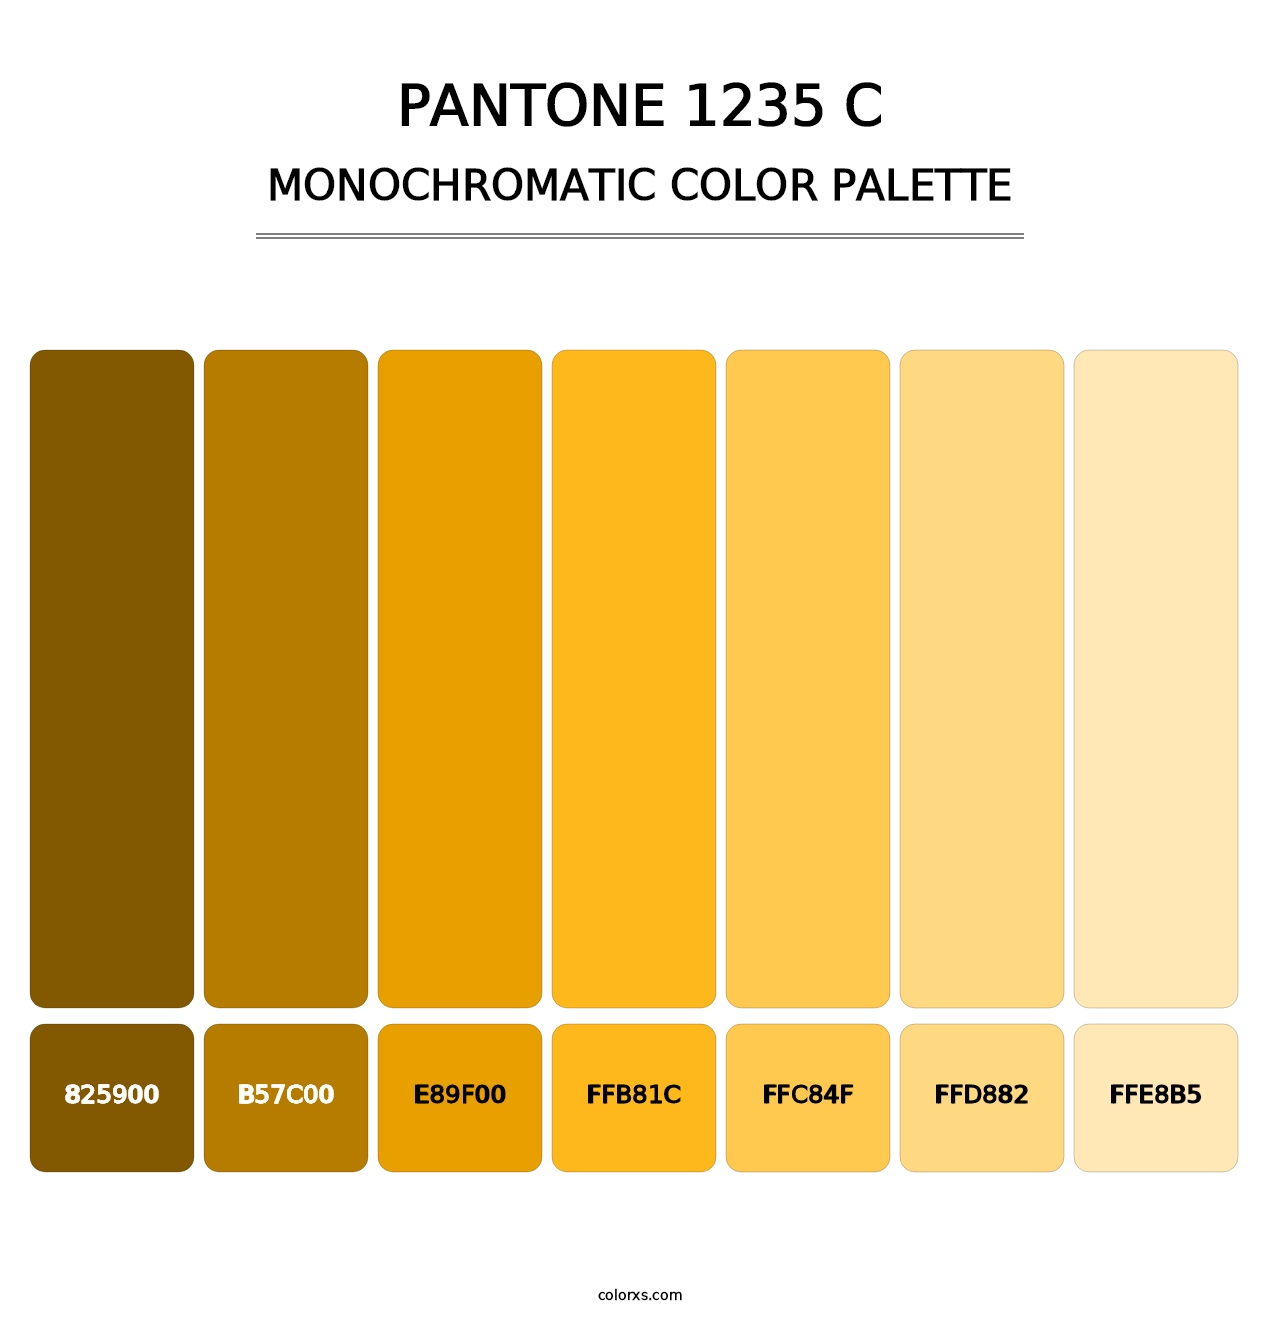 PANTONE 1235 C - Monochromatic Color Palette